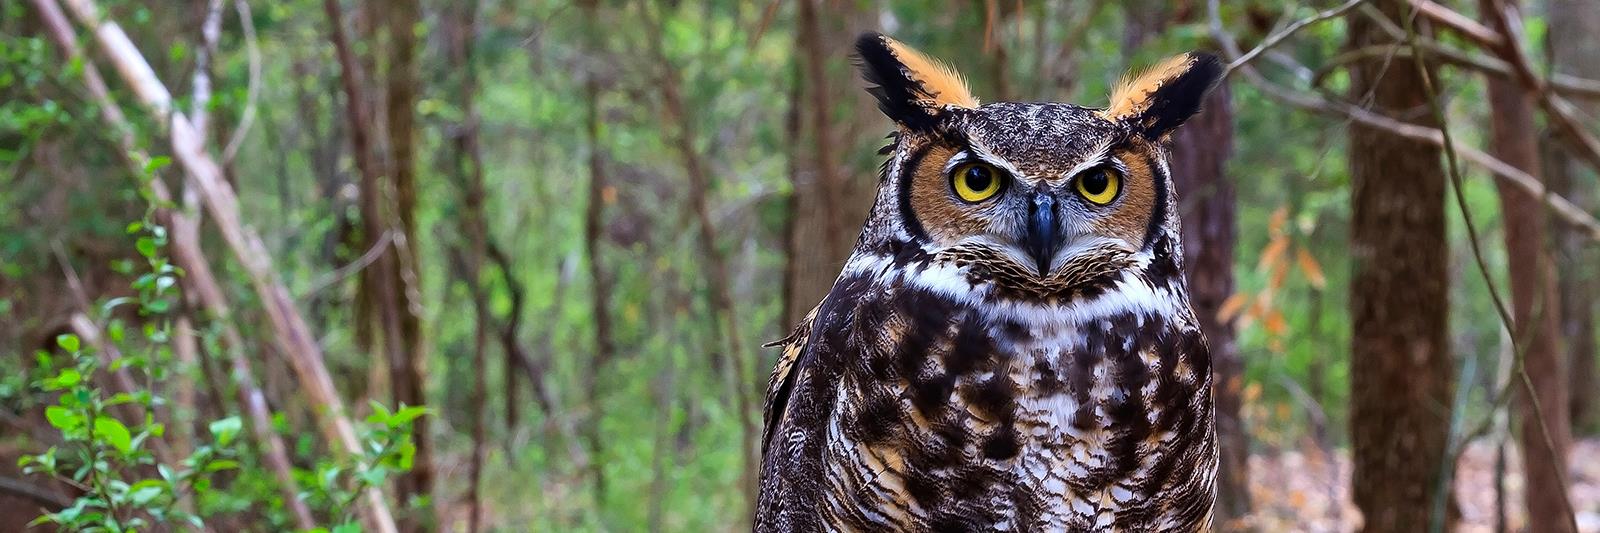 horned-owl